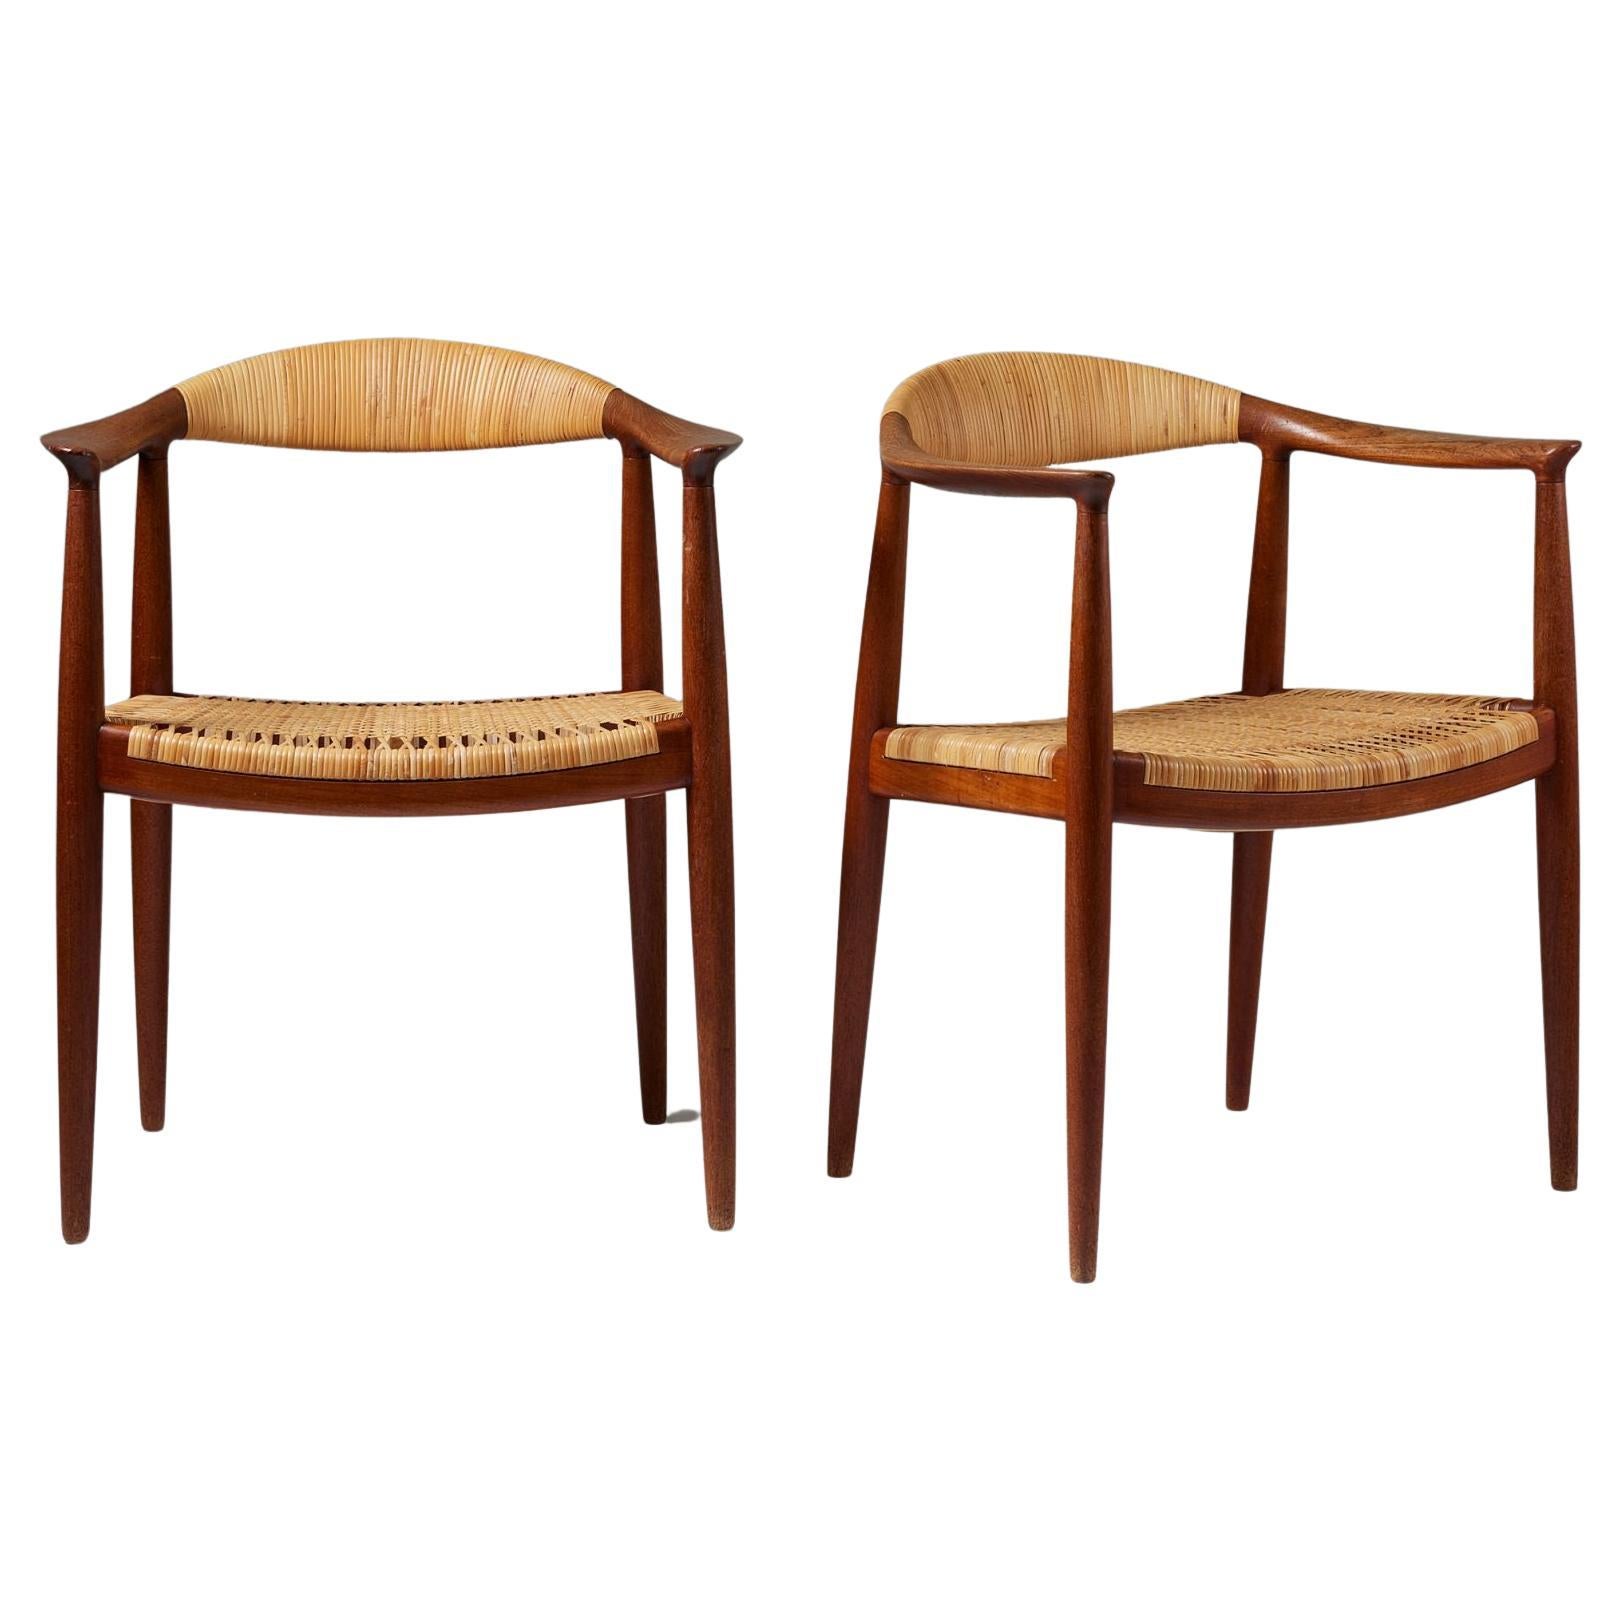 Paire de fauteuils 'The Chair' modèle JH 501 designé par Hans J. Wegner 1949